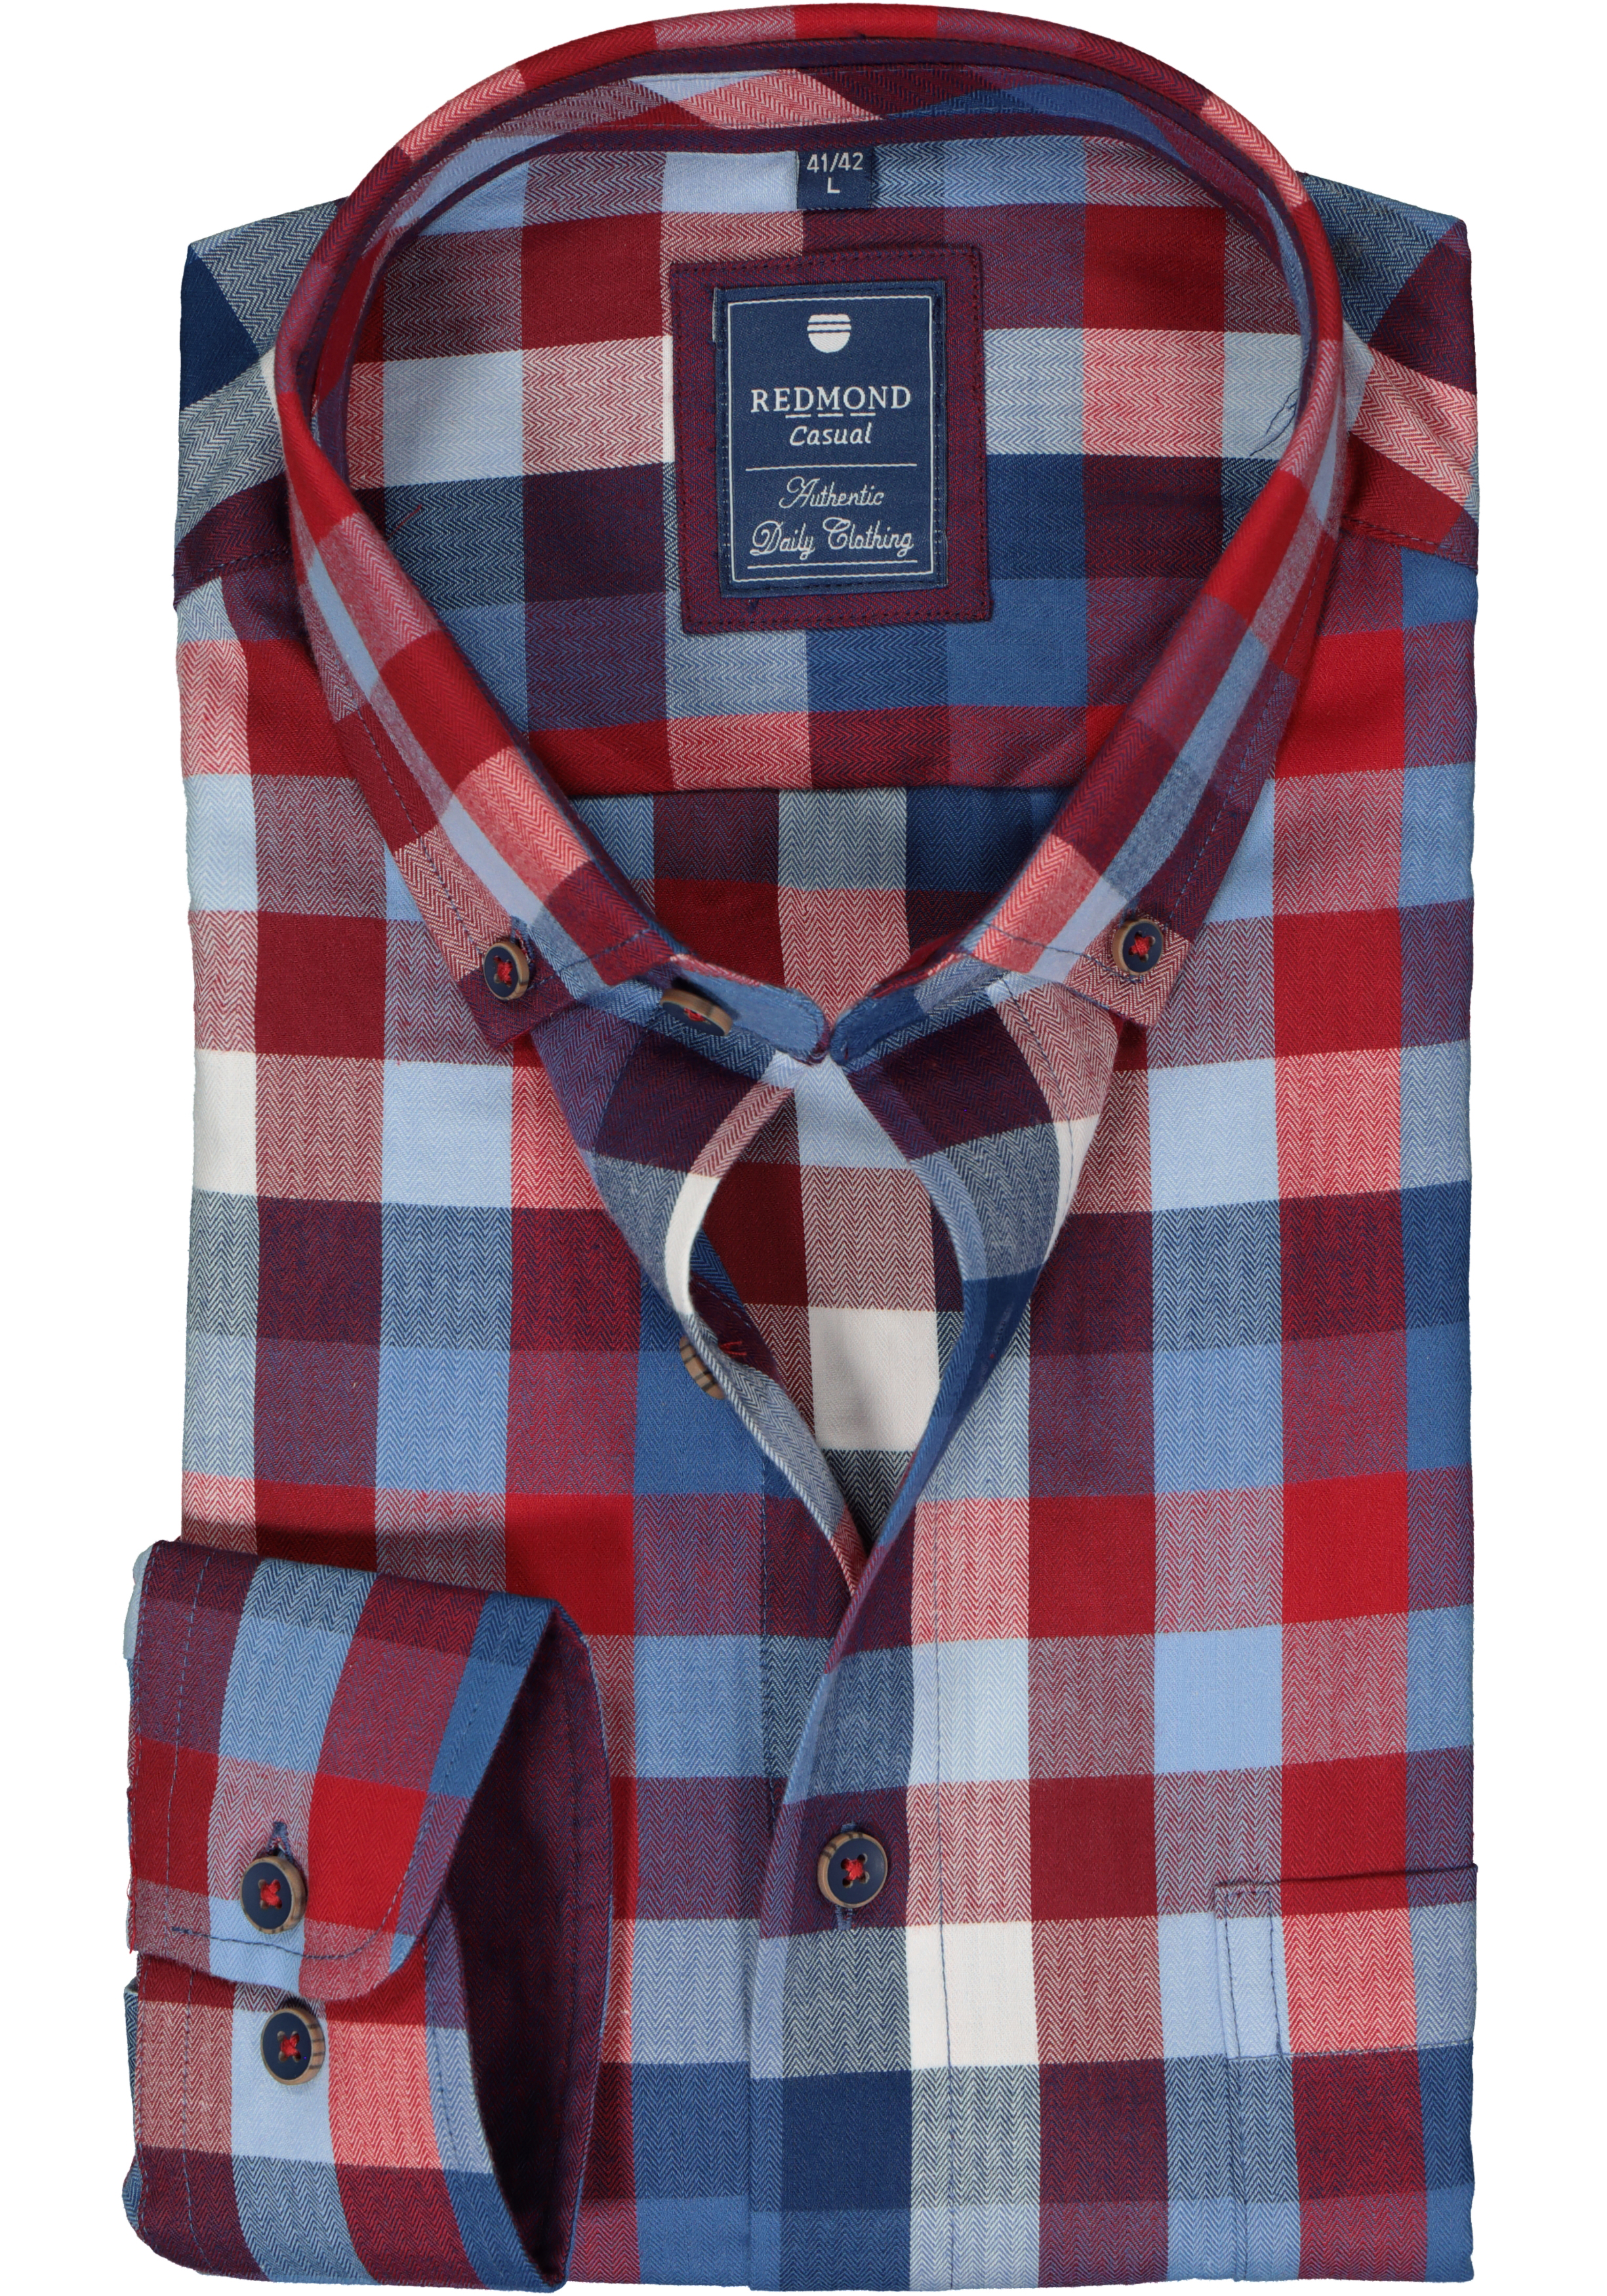 Redmond regular fit overhemd, herringbone, blauw met rood en wit geruit